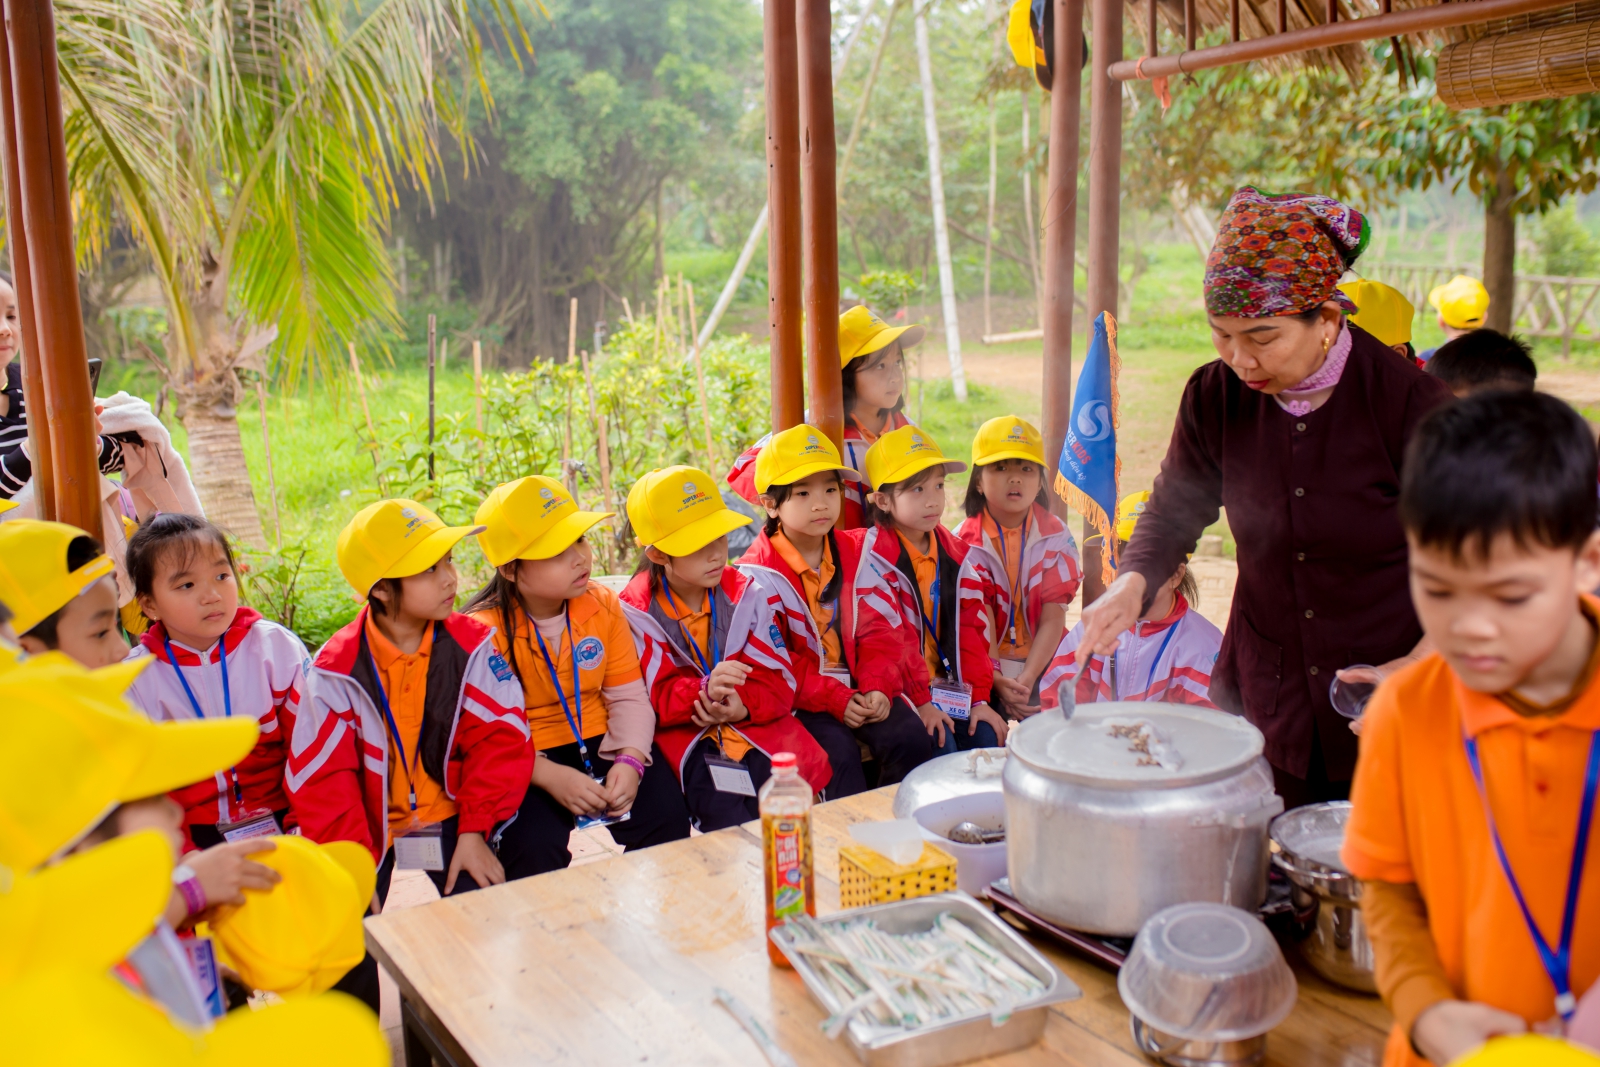 Thầy cô cunngf các em học sinh tham gia vào các hoạt động làm bánh truyền thống.